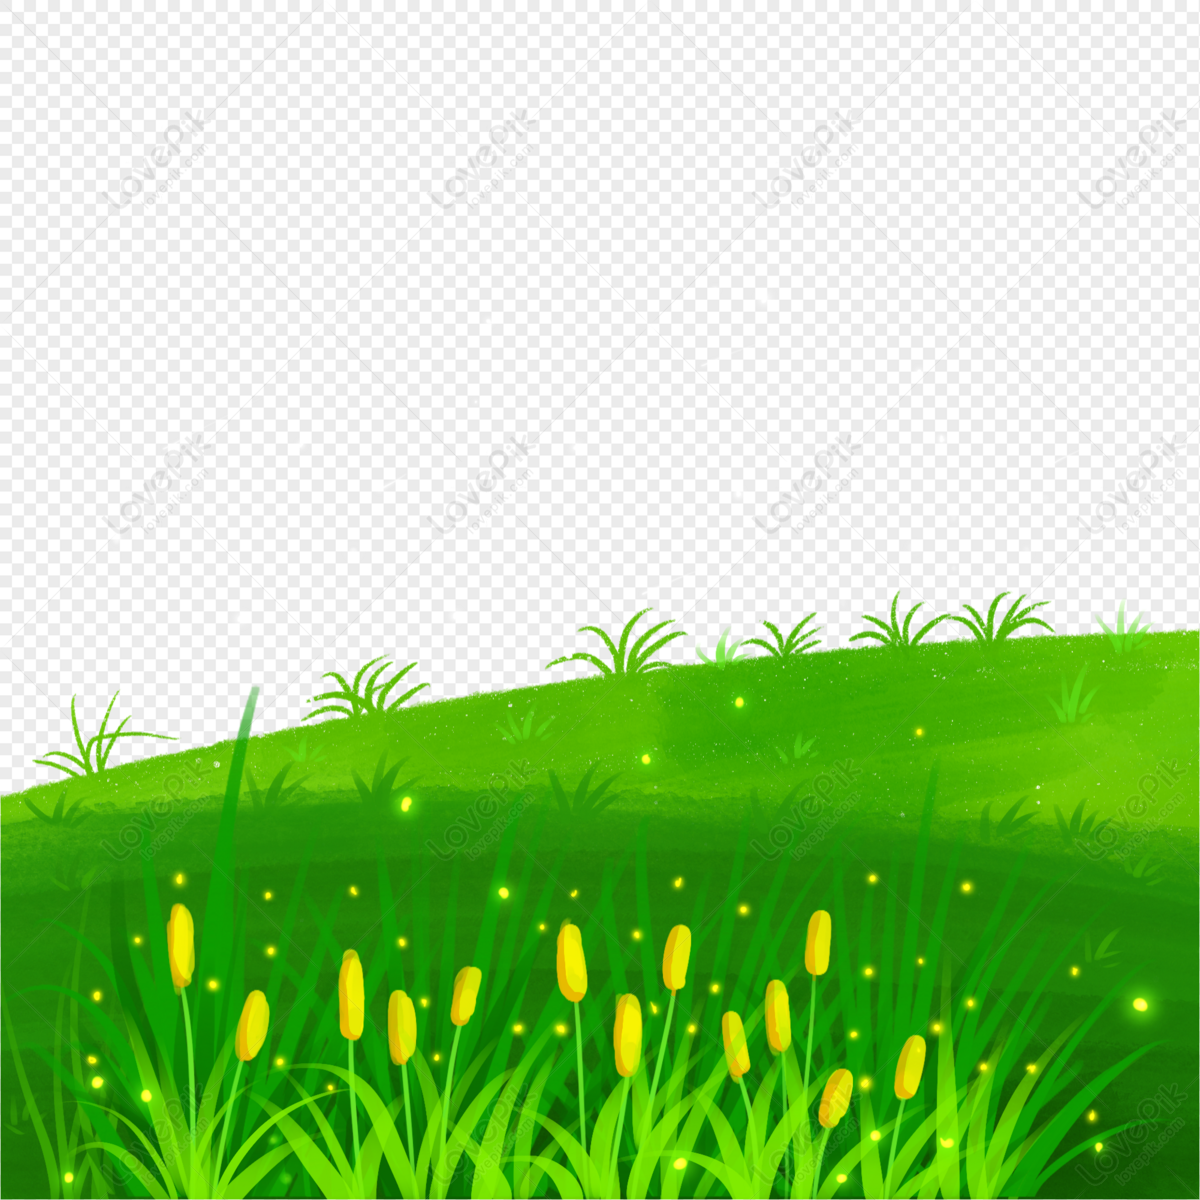 Cây Cỏ PNG: Đắm mình trong cảm giác thư thái với hình ảnh cây cỏ PNG được cắt tỉa thật tinh tế và tự nhiên. Hãy thưởng thức khoảnh khắc bình yên trong không gian xanh tươi mát của những nội thất vô cùng sống động.